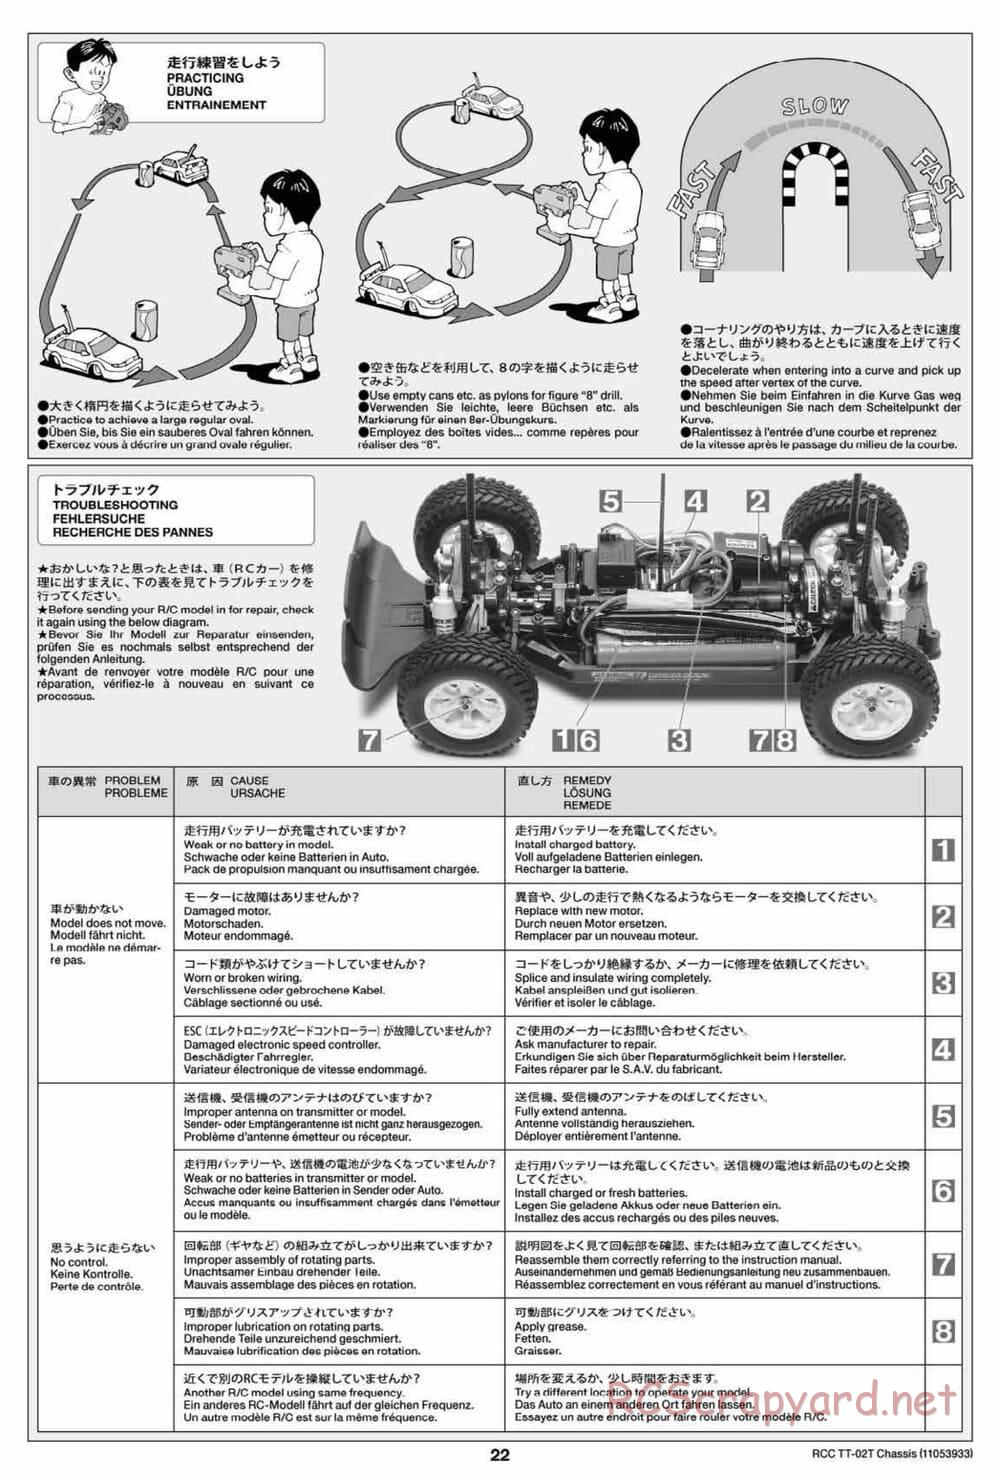 Tamiya - TT-02T Chassis - Manual - Page 23